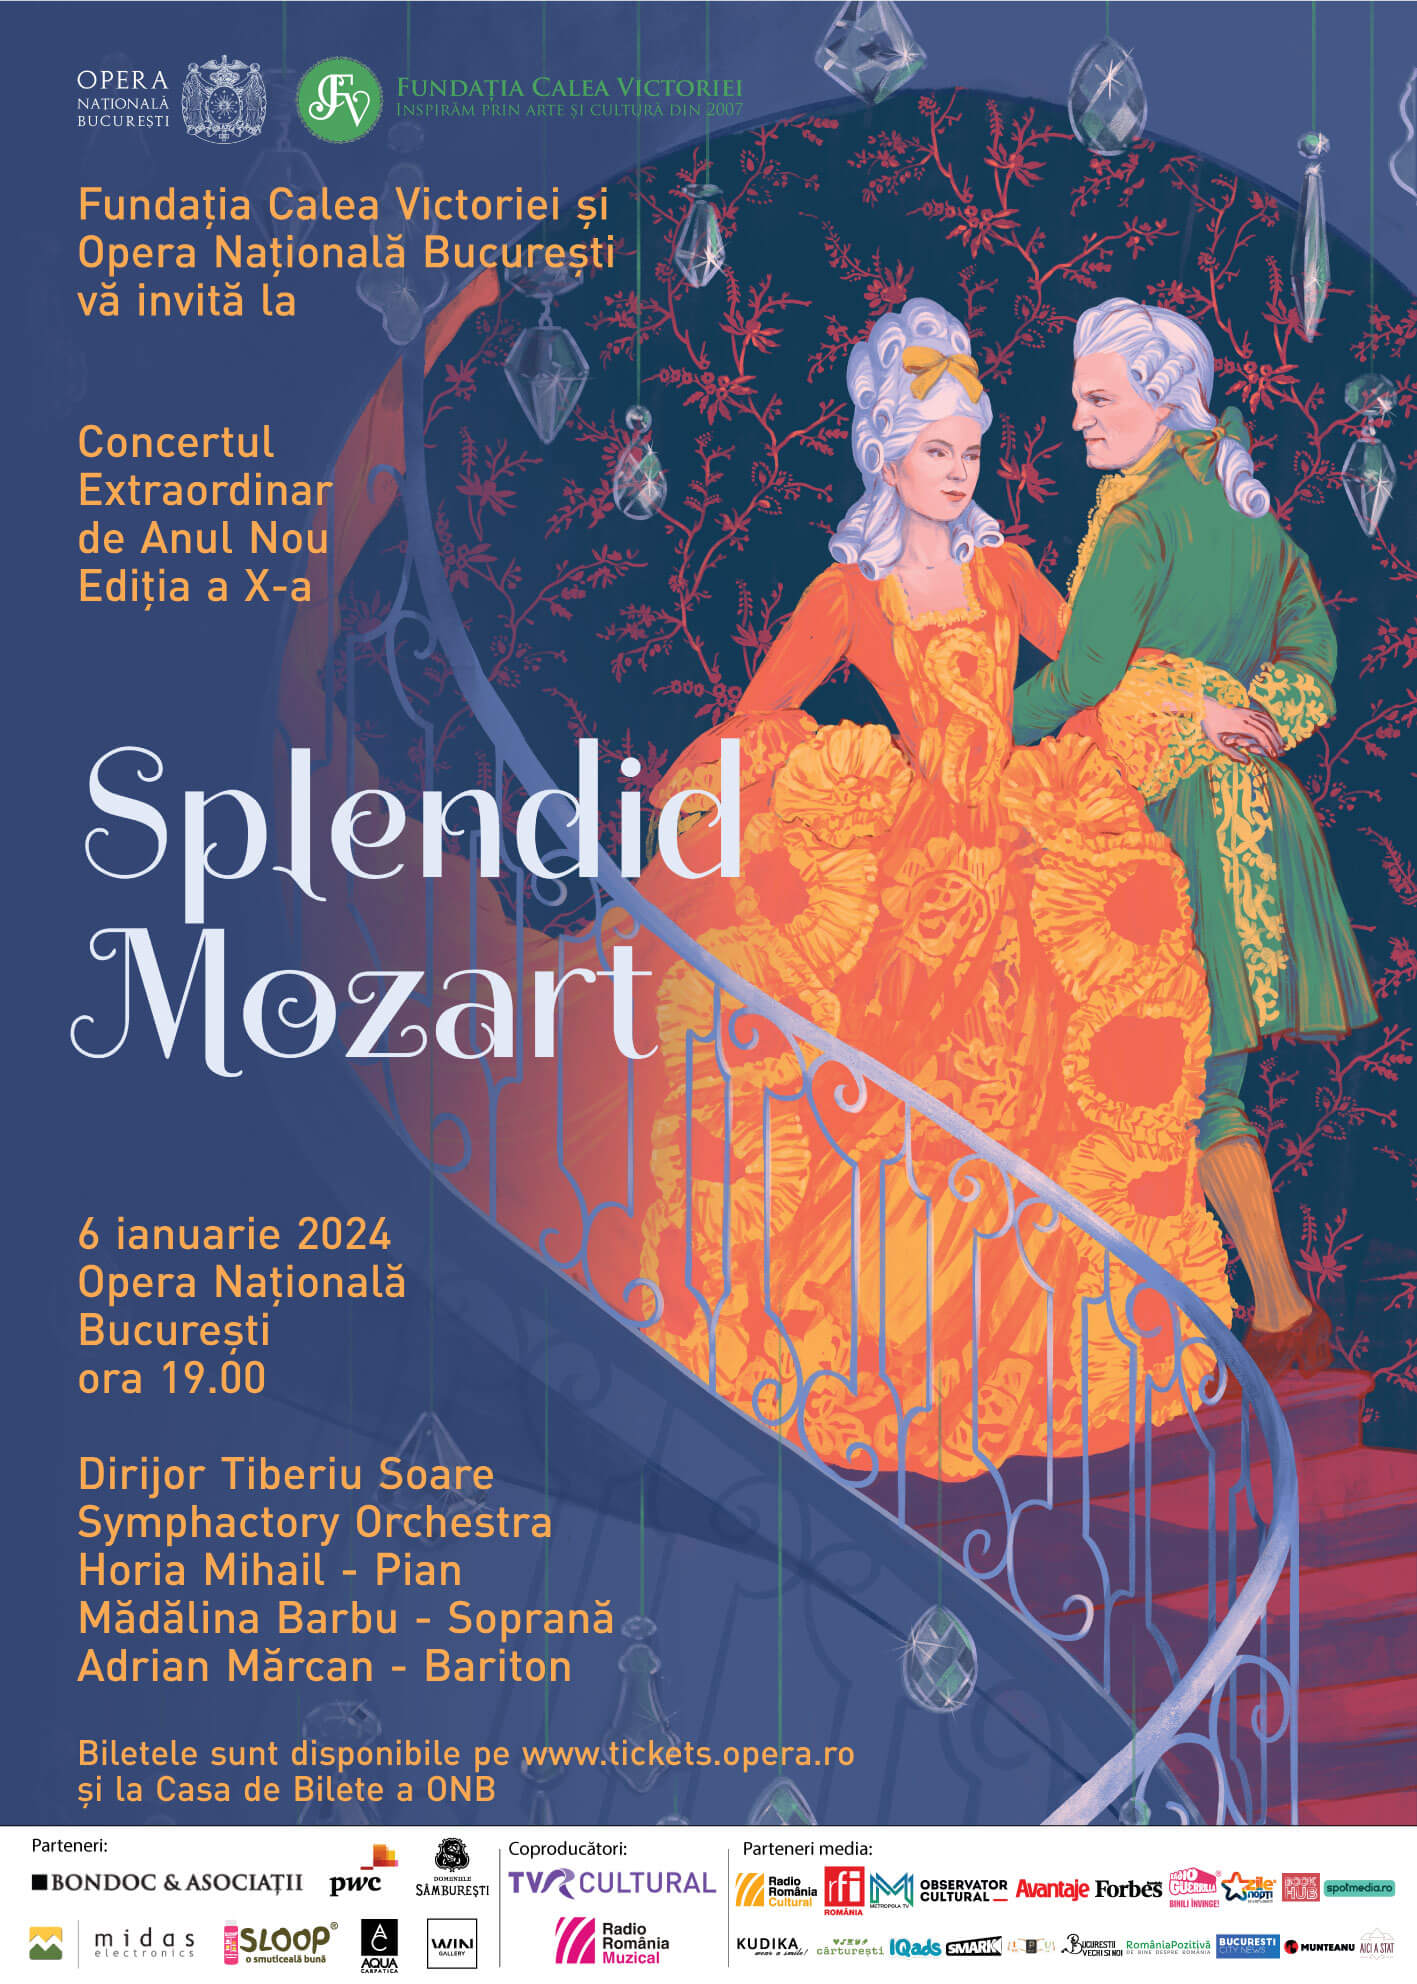 Concert Extraordinar de Anul Nou ediția a X-a - SPLENDID MOZART